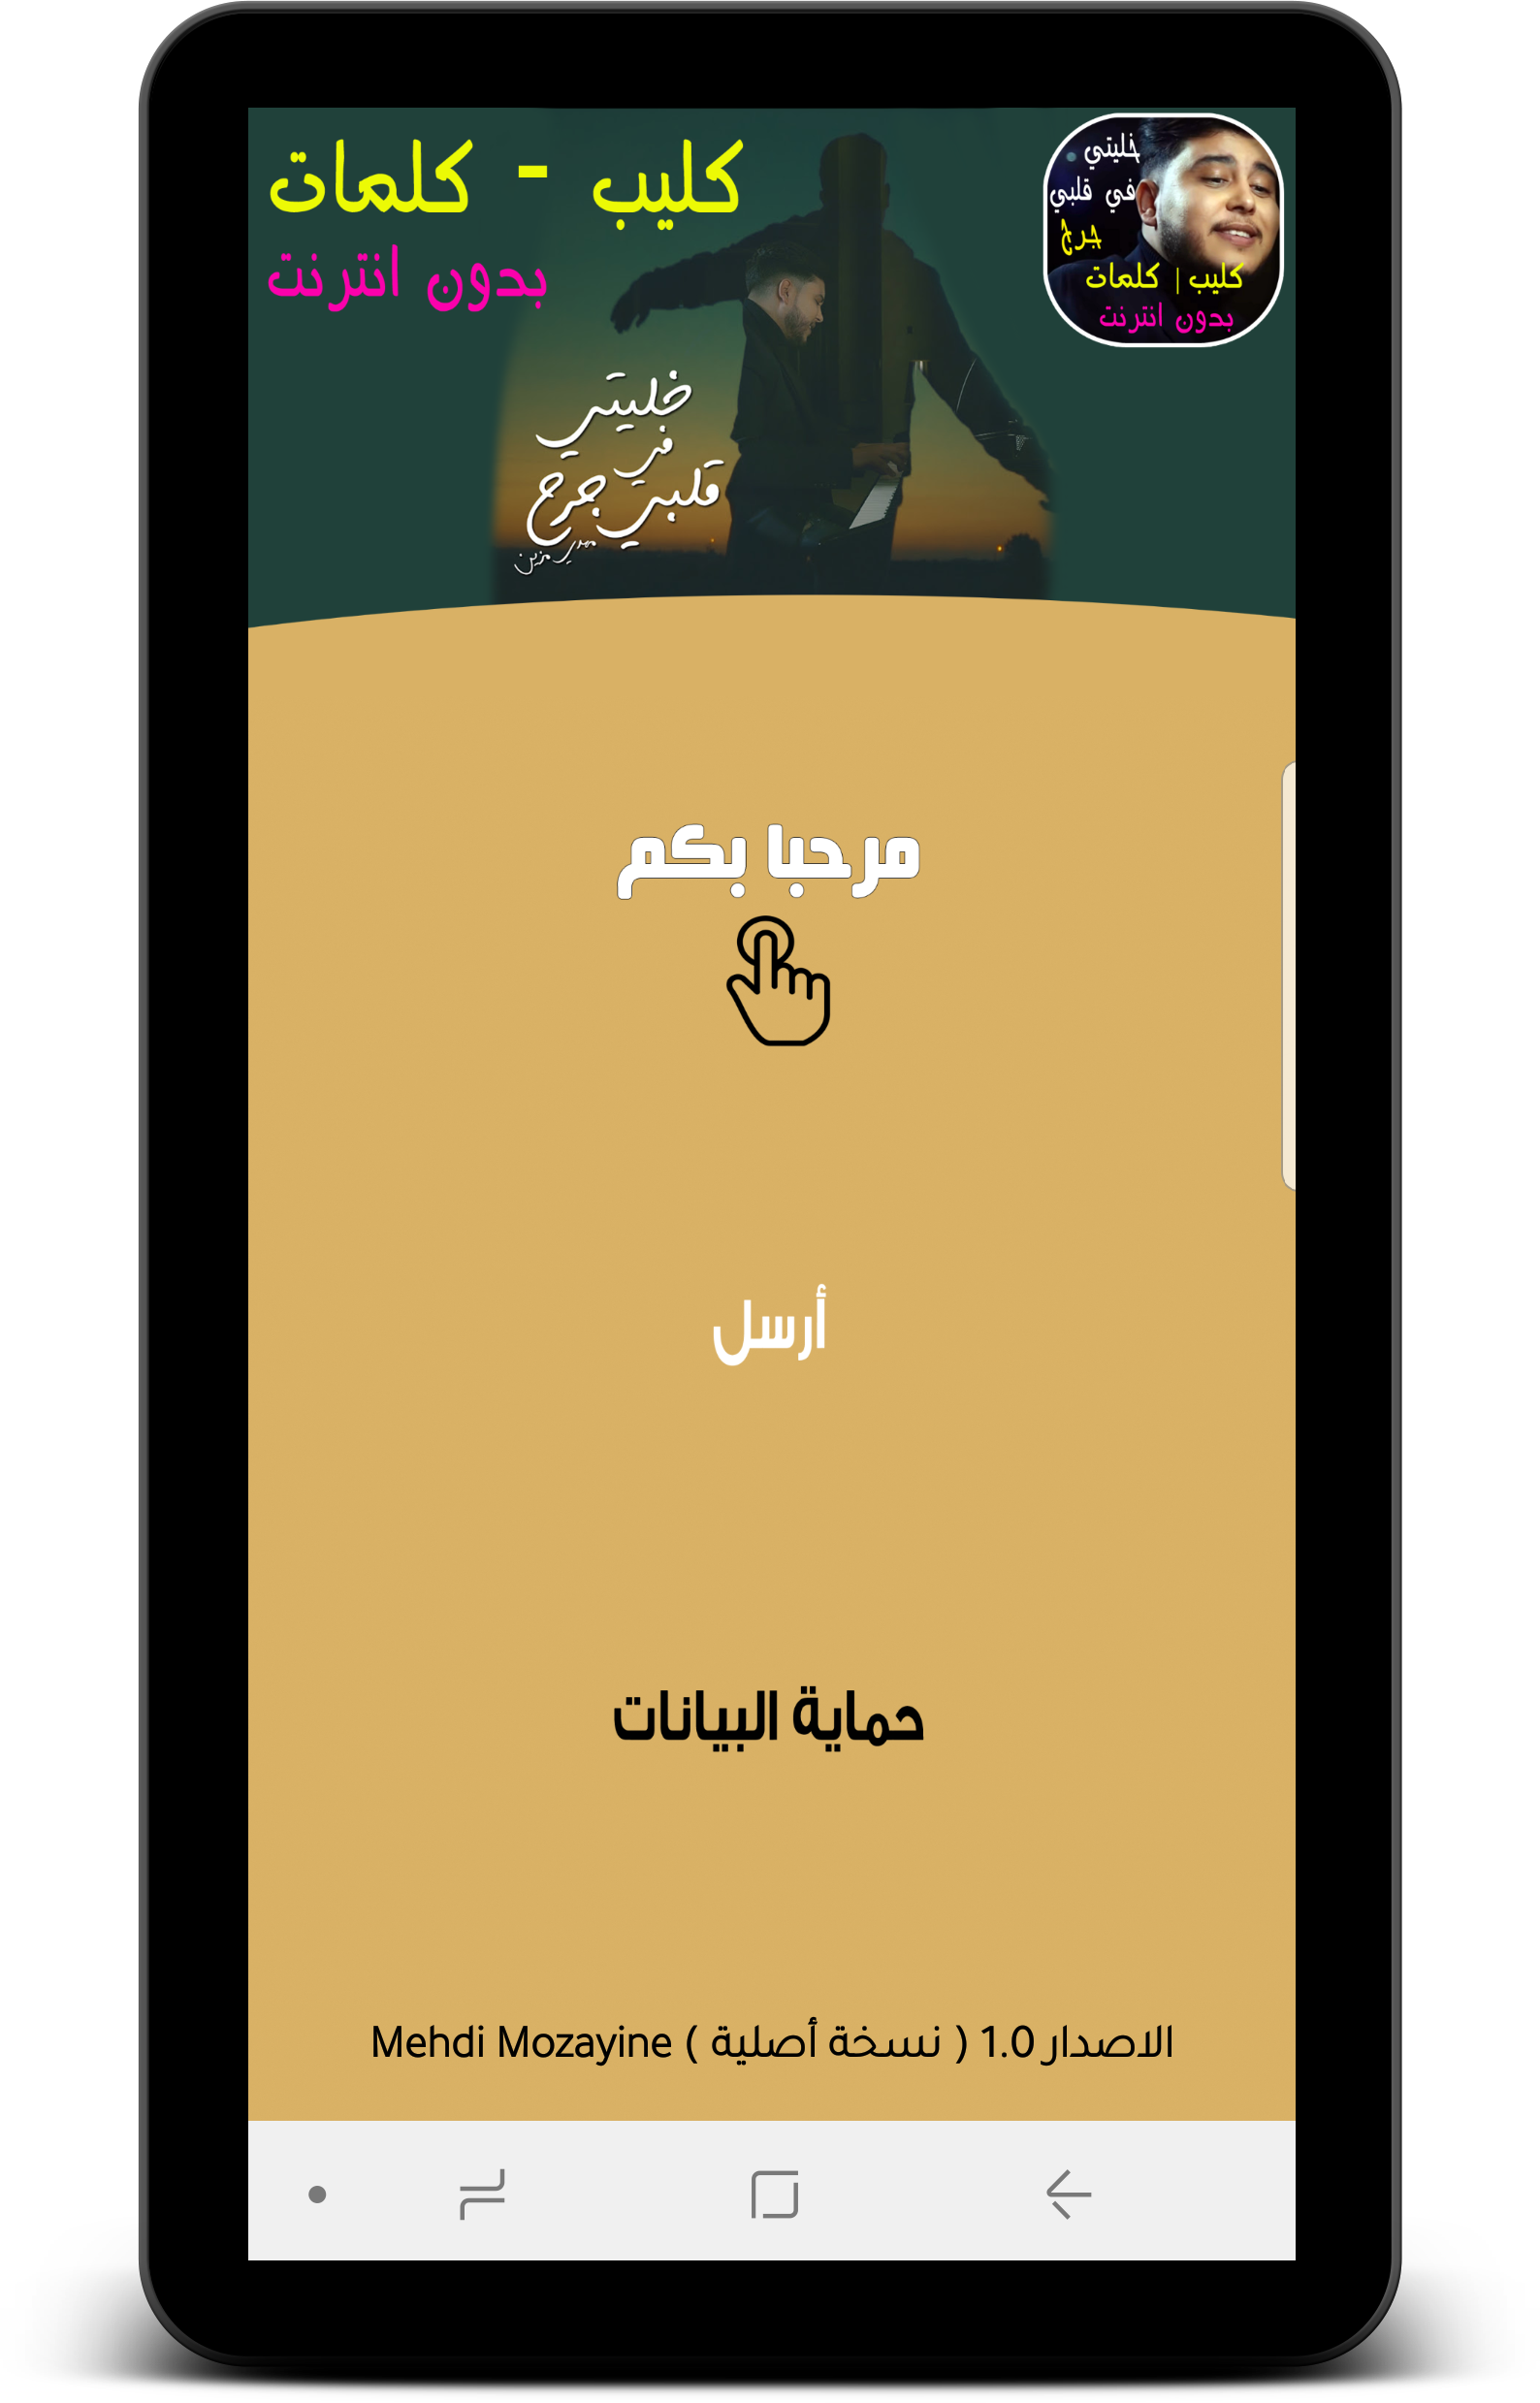 Khaliti Fi Galbi Jarh - Mehdi Mozayine + كلمات APK 1.0 for Android –  Download Khaliti Fi Galbi Jarh - Mehdi Mozayine + كلمات APK Latest Version  from APKFab.com